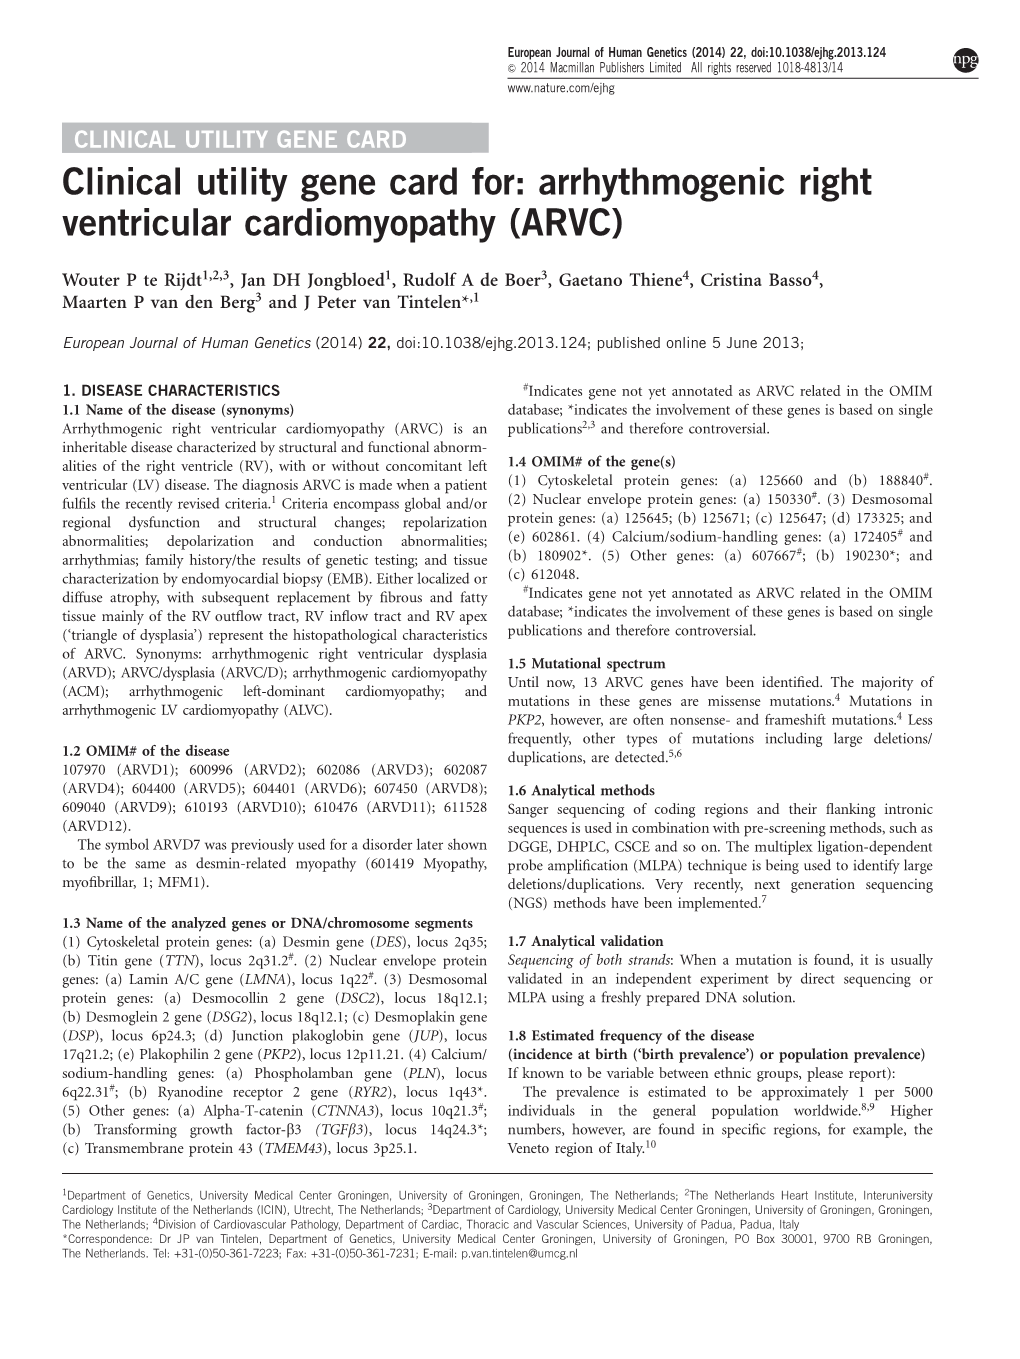 Arrhythmogenic Right Ventricular Cardiomyopathy (ARVC)